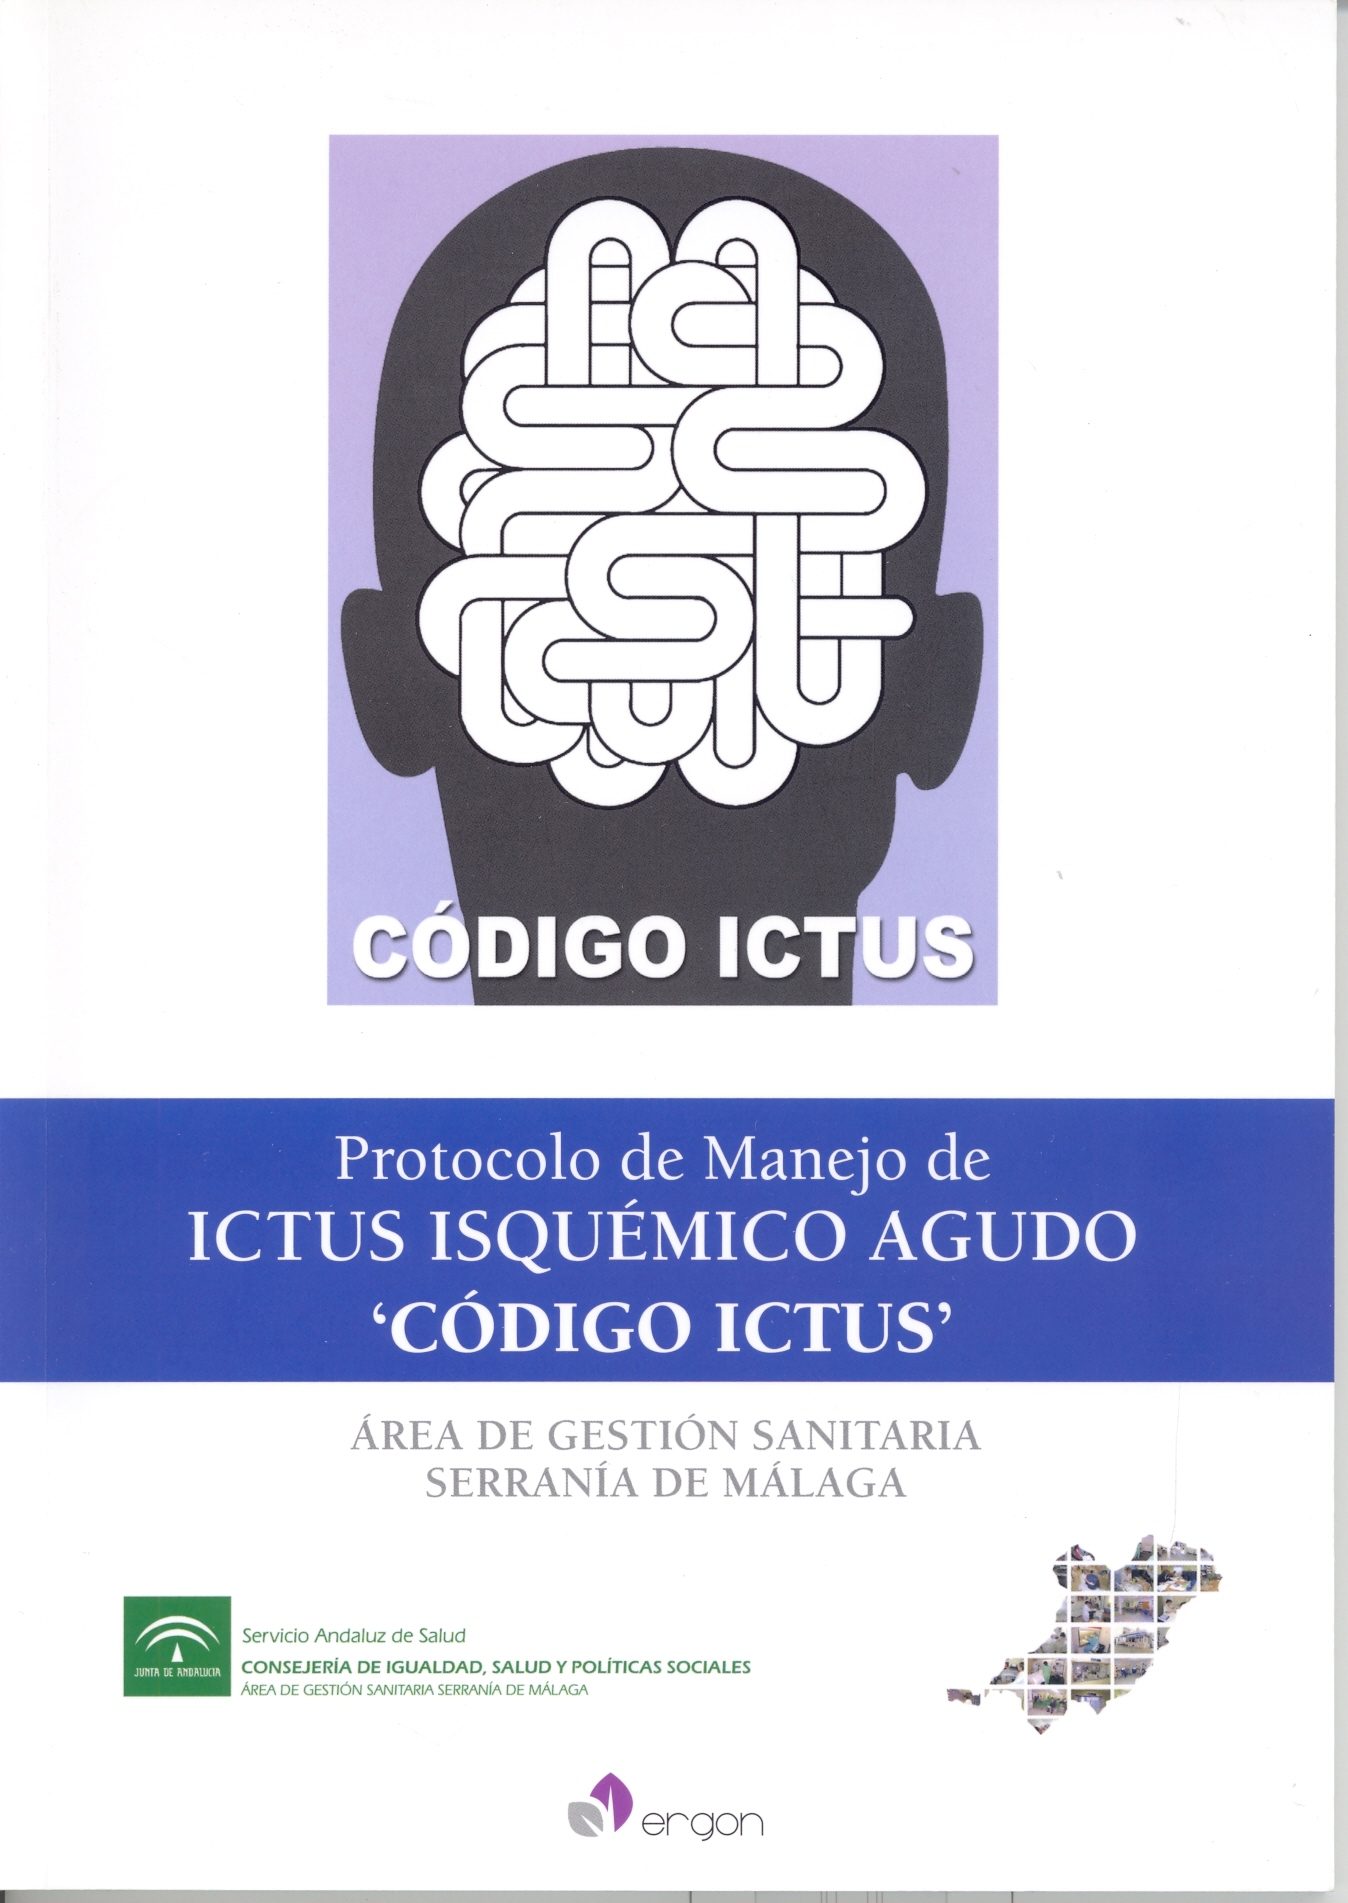 Protocólo de Manejo de Ictus Isquémico Agudo - Código ICTUS